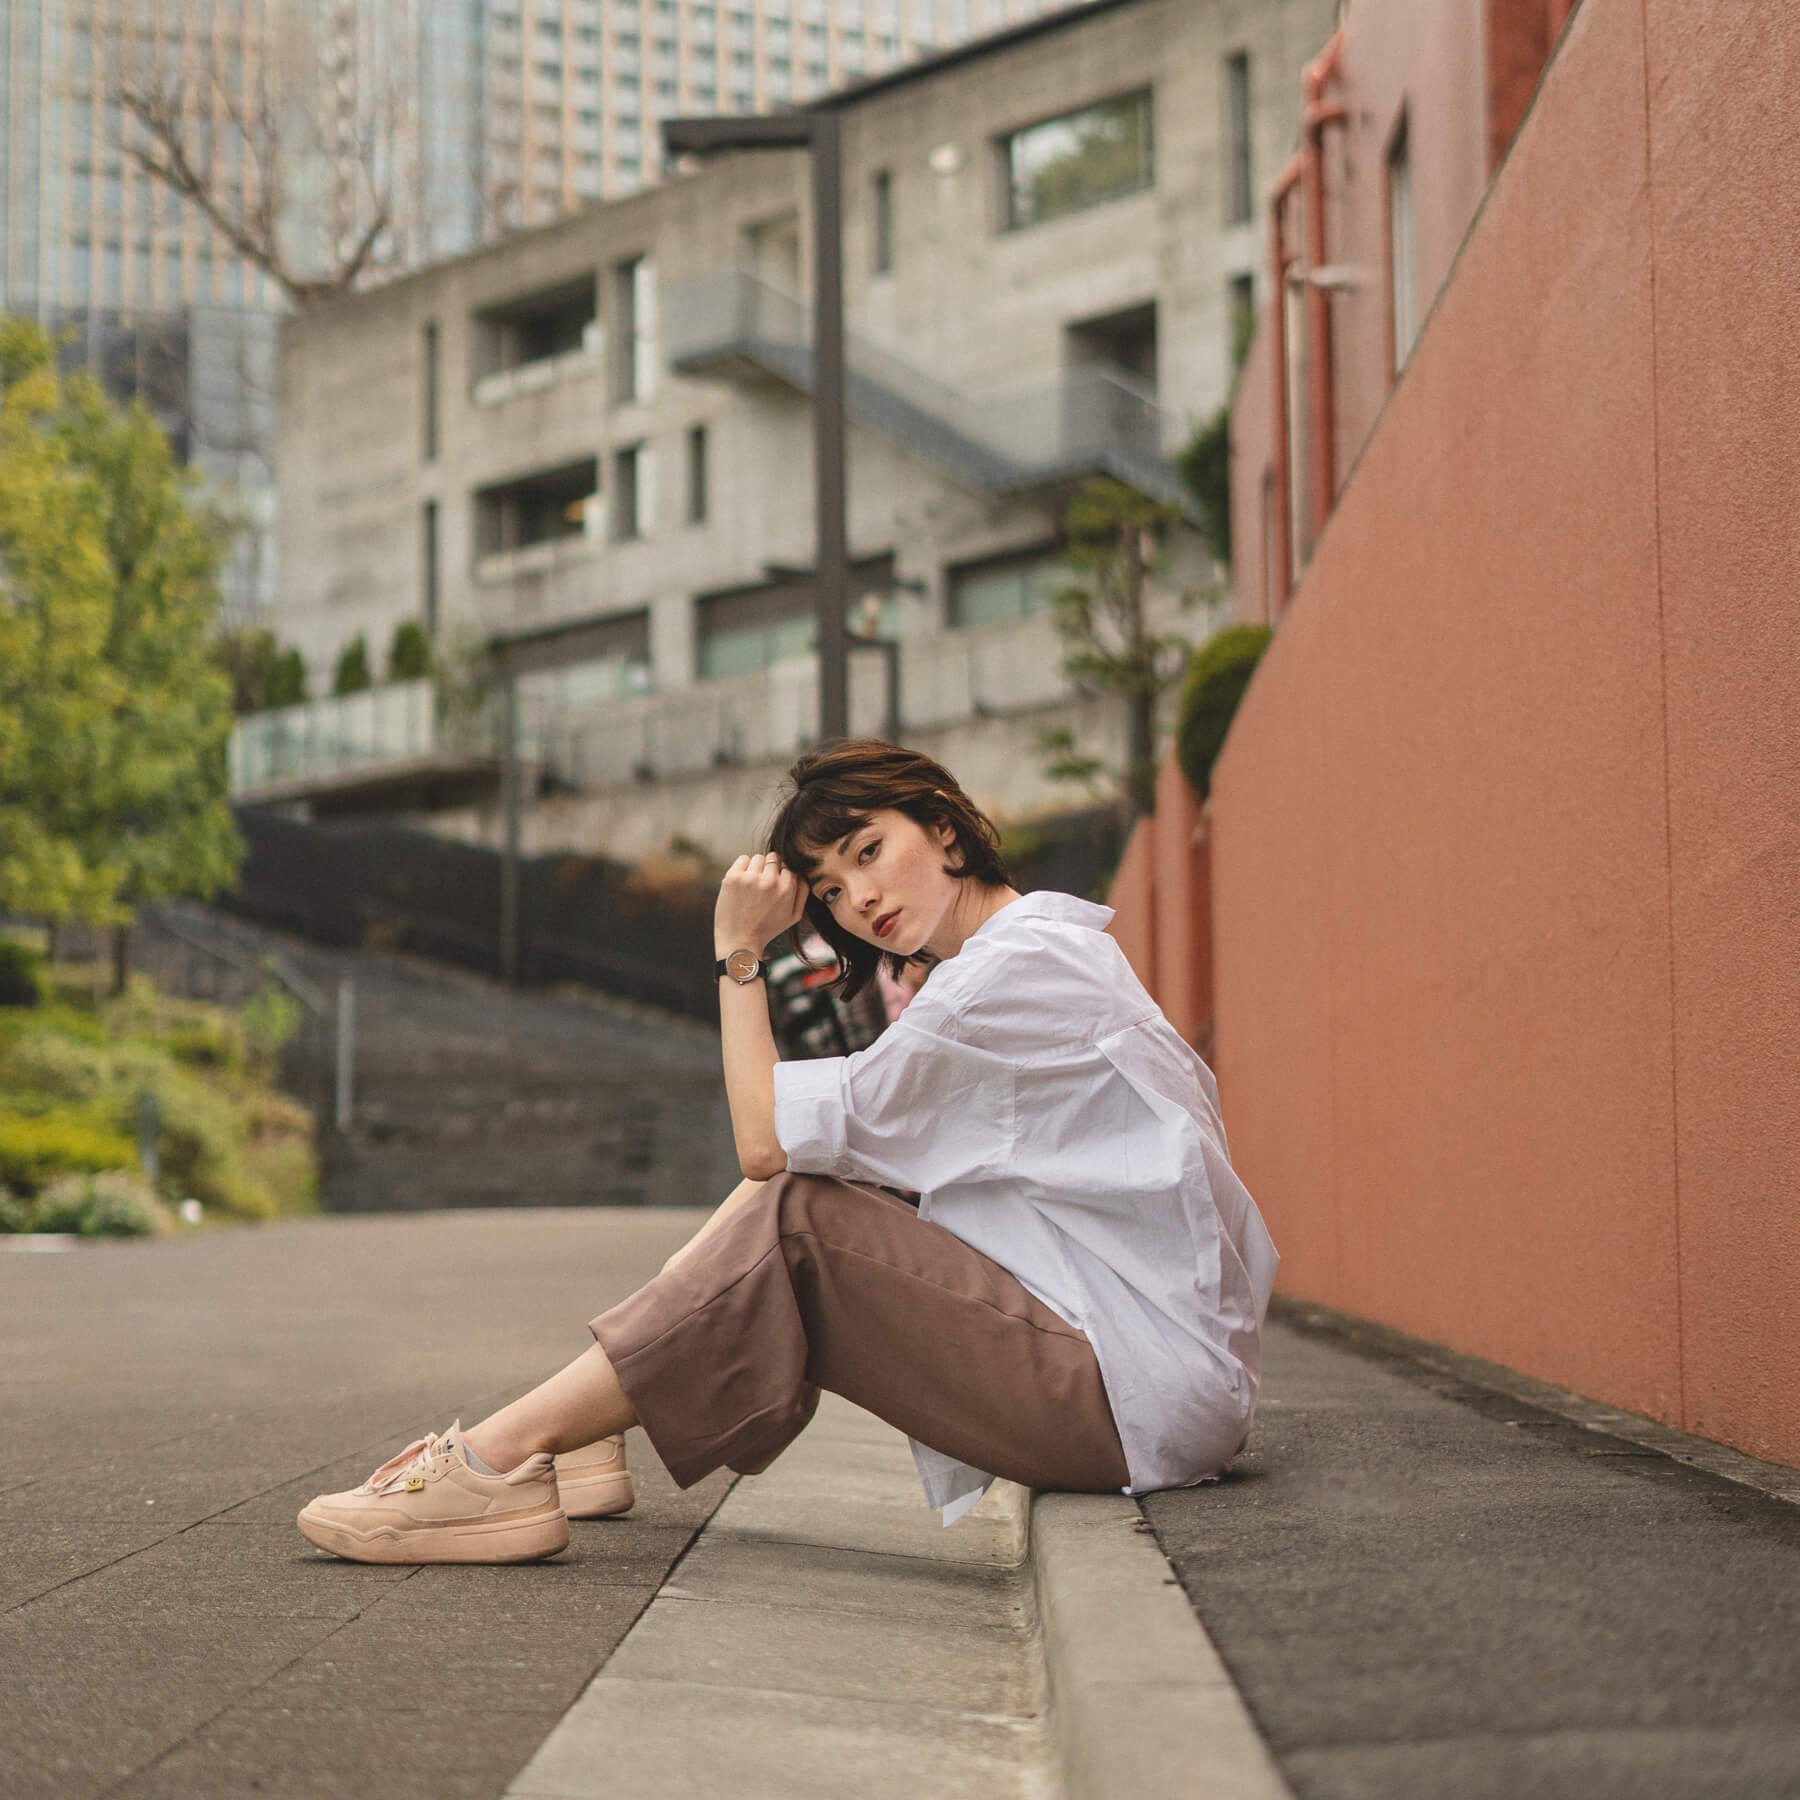 ヴェアホイの木製腕時計 Petite｜SAKURA を身に付け、道路に座っている白いシャツの女性